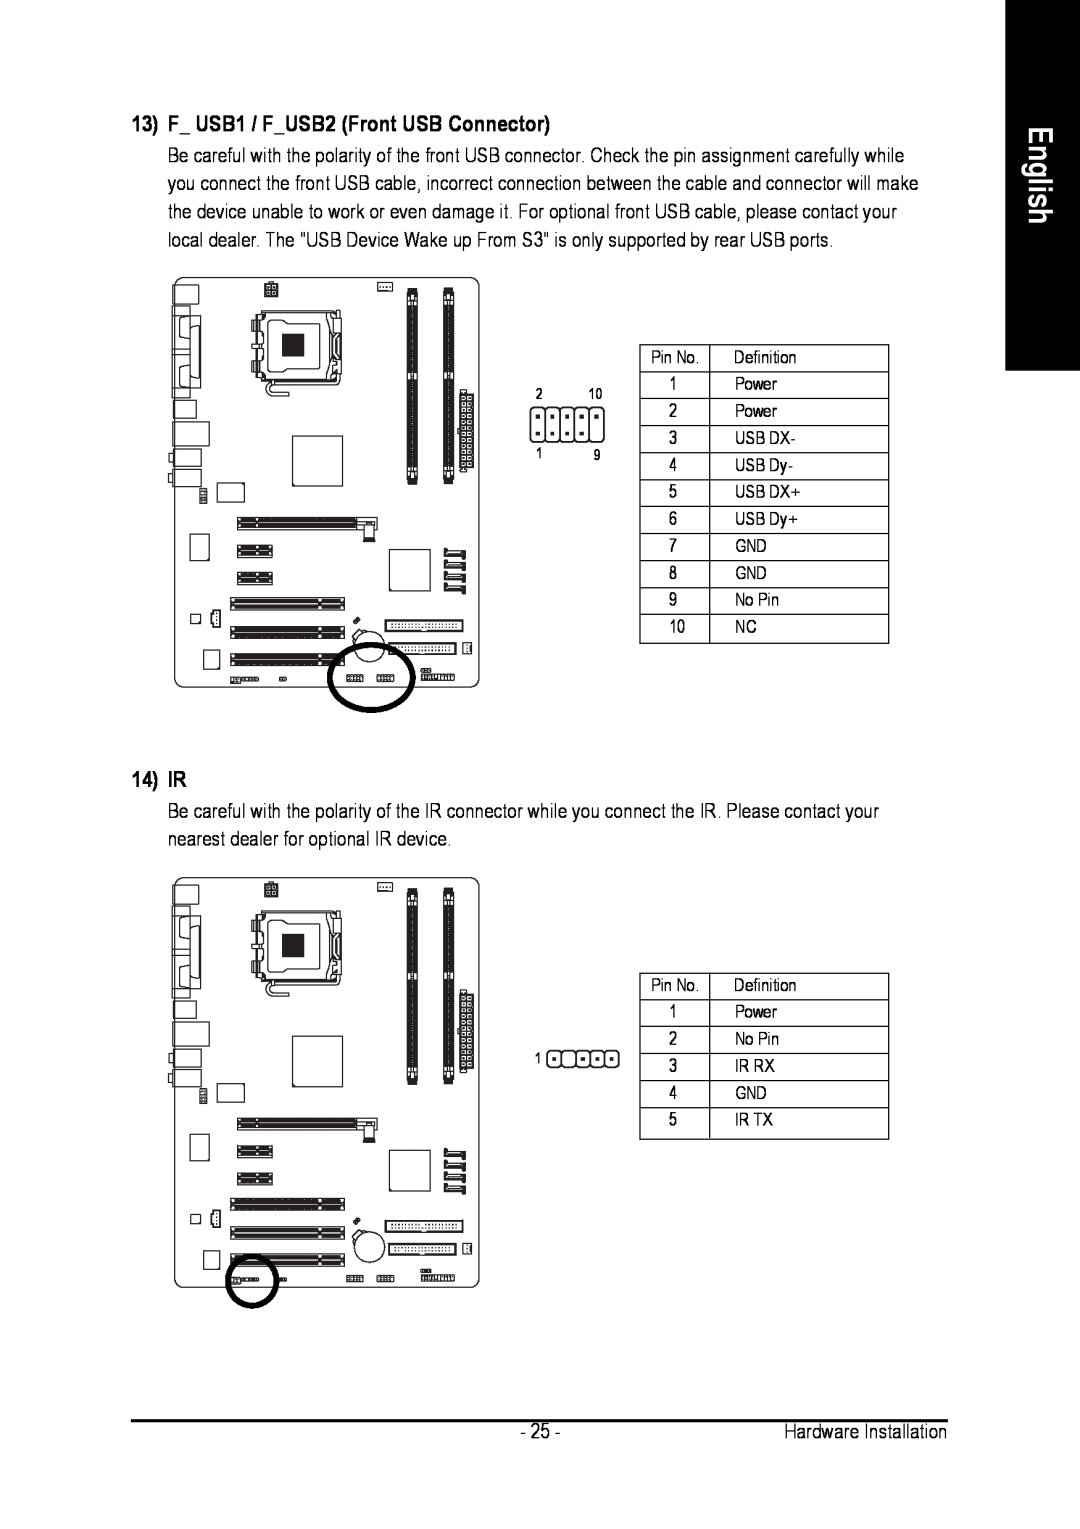 Intel GA-8I915PL-G user manual F USB1 / FUSB2 Front USB Connector, 14 IR, English 